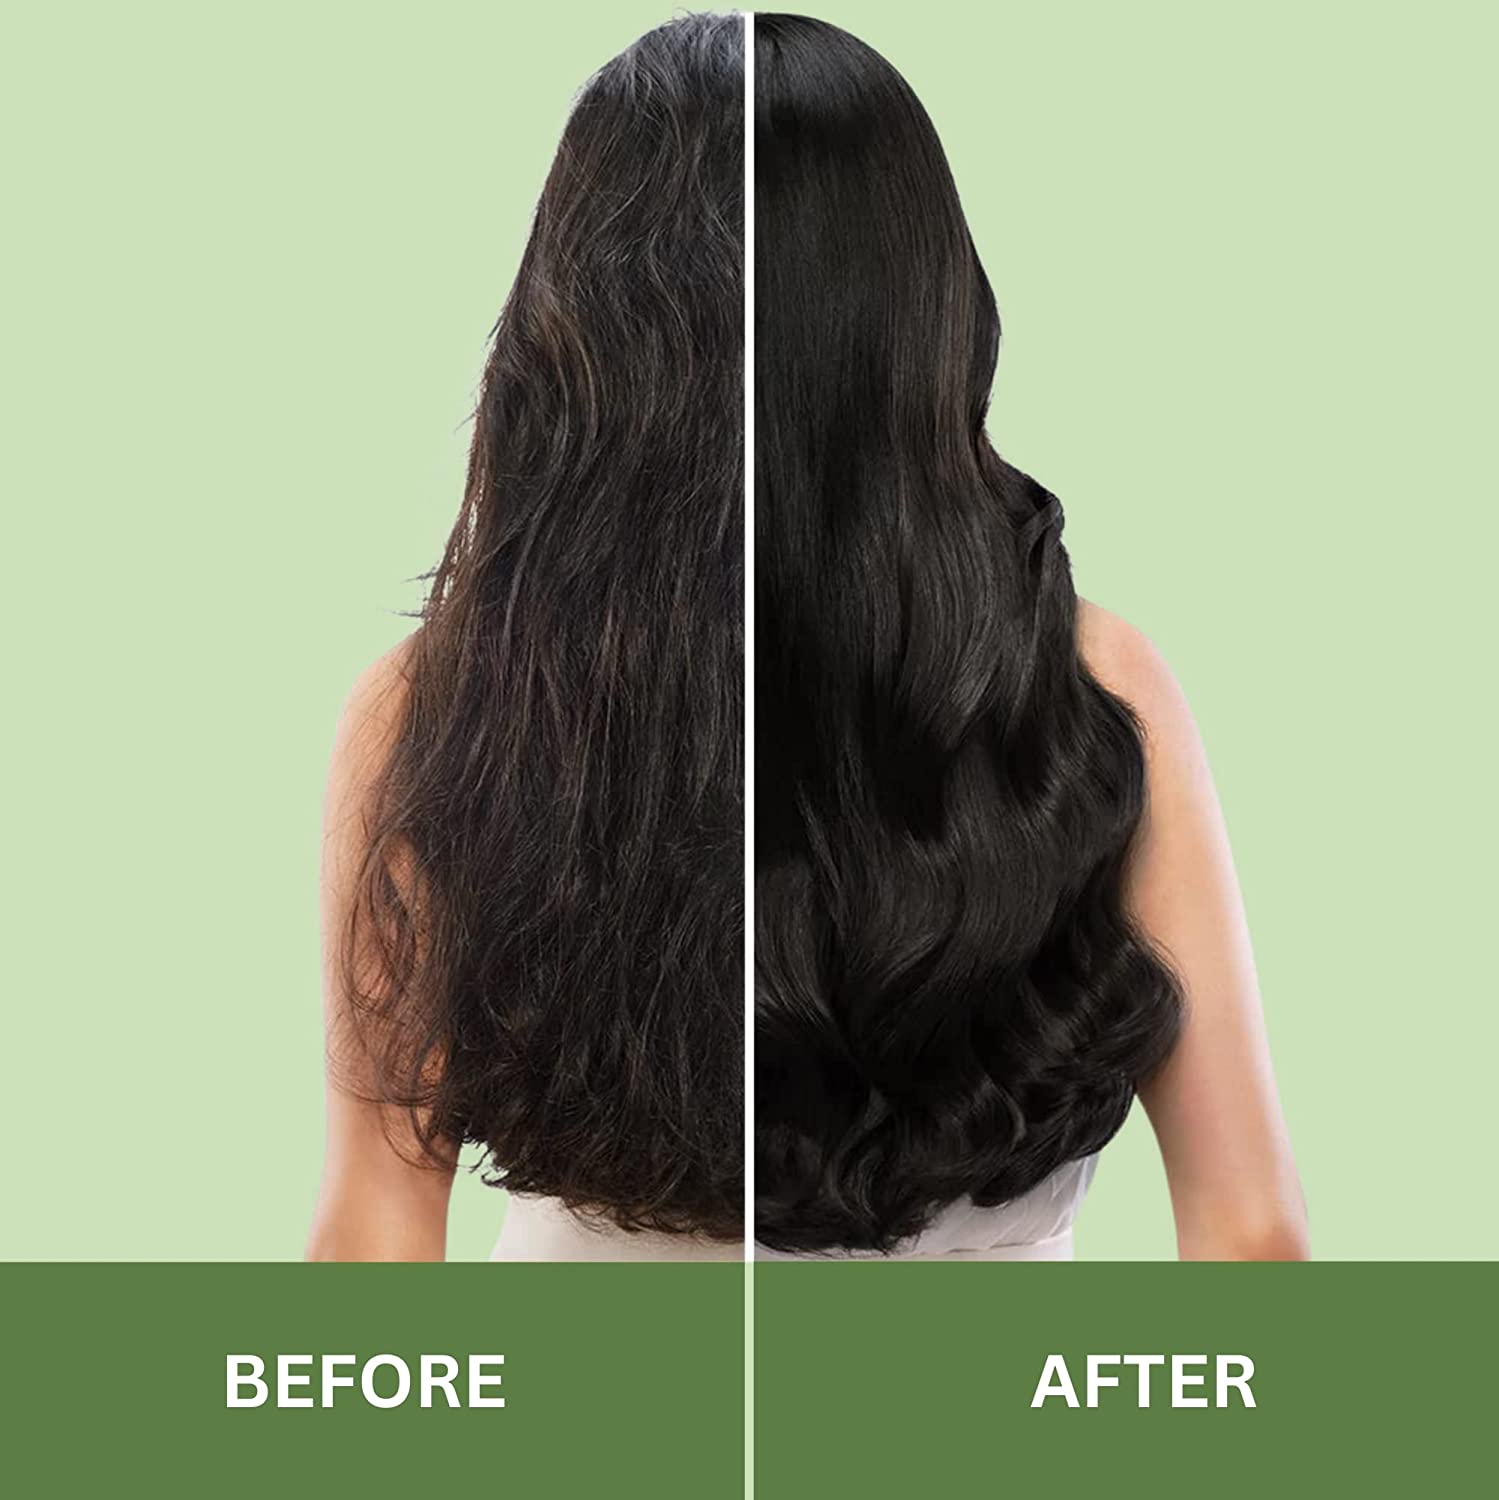 Havintha Natural Hair Growth Vitalizer For Boost Hair Growth &amp; Hair Fall Control | Hair Serum With Amla, Black Seed, Onion, Biotin, Green Tea, AQUA, PEA Protein, Vitamin E, and Caffeine - 75 ML